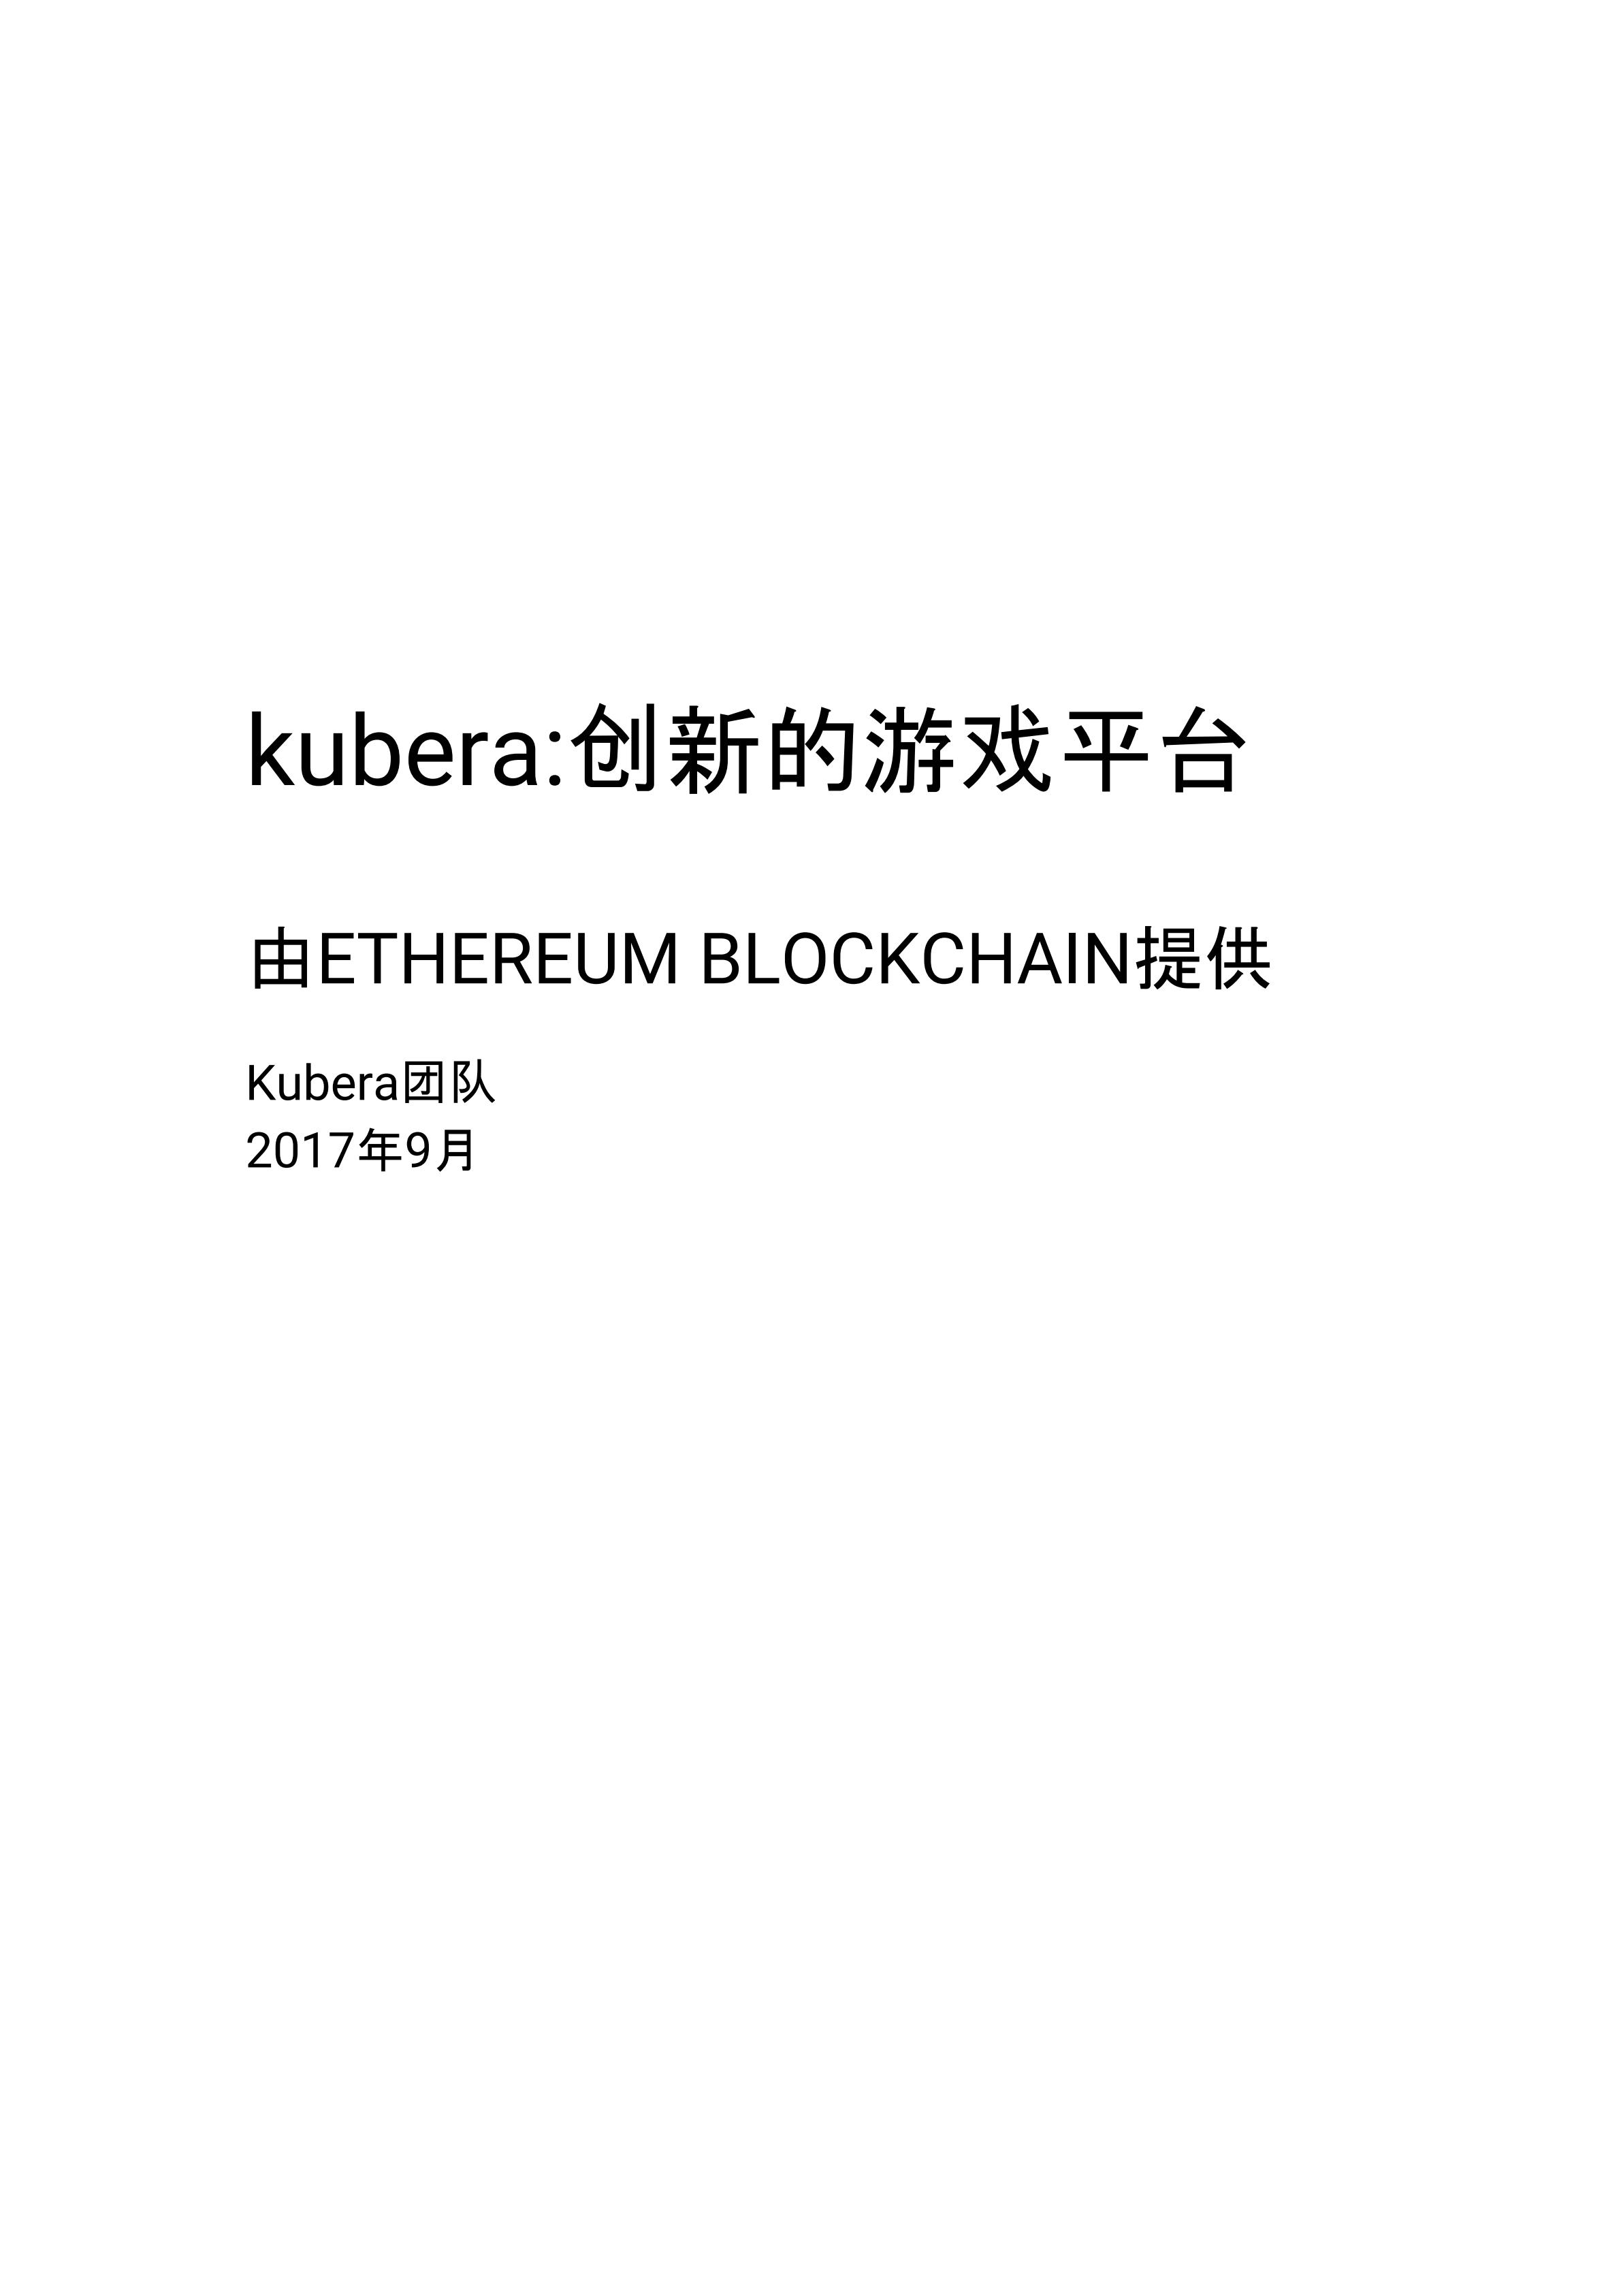 KBR_KUBERA_CHINA_00.jpg